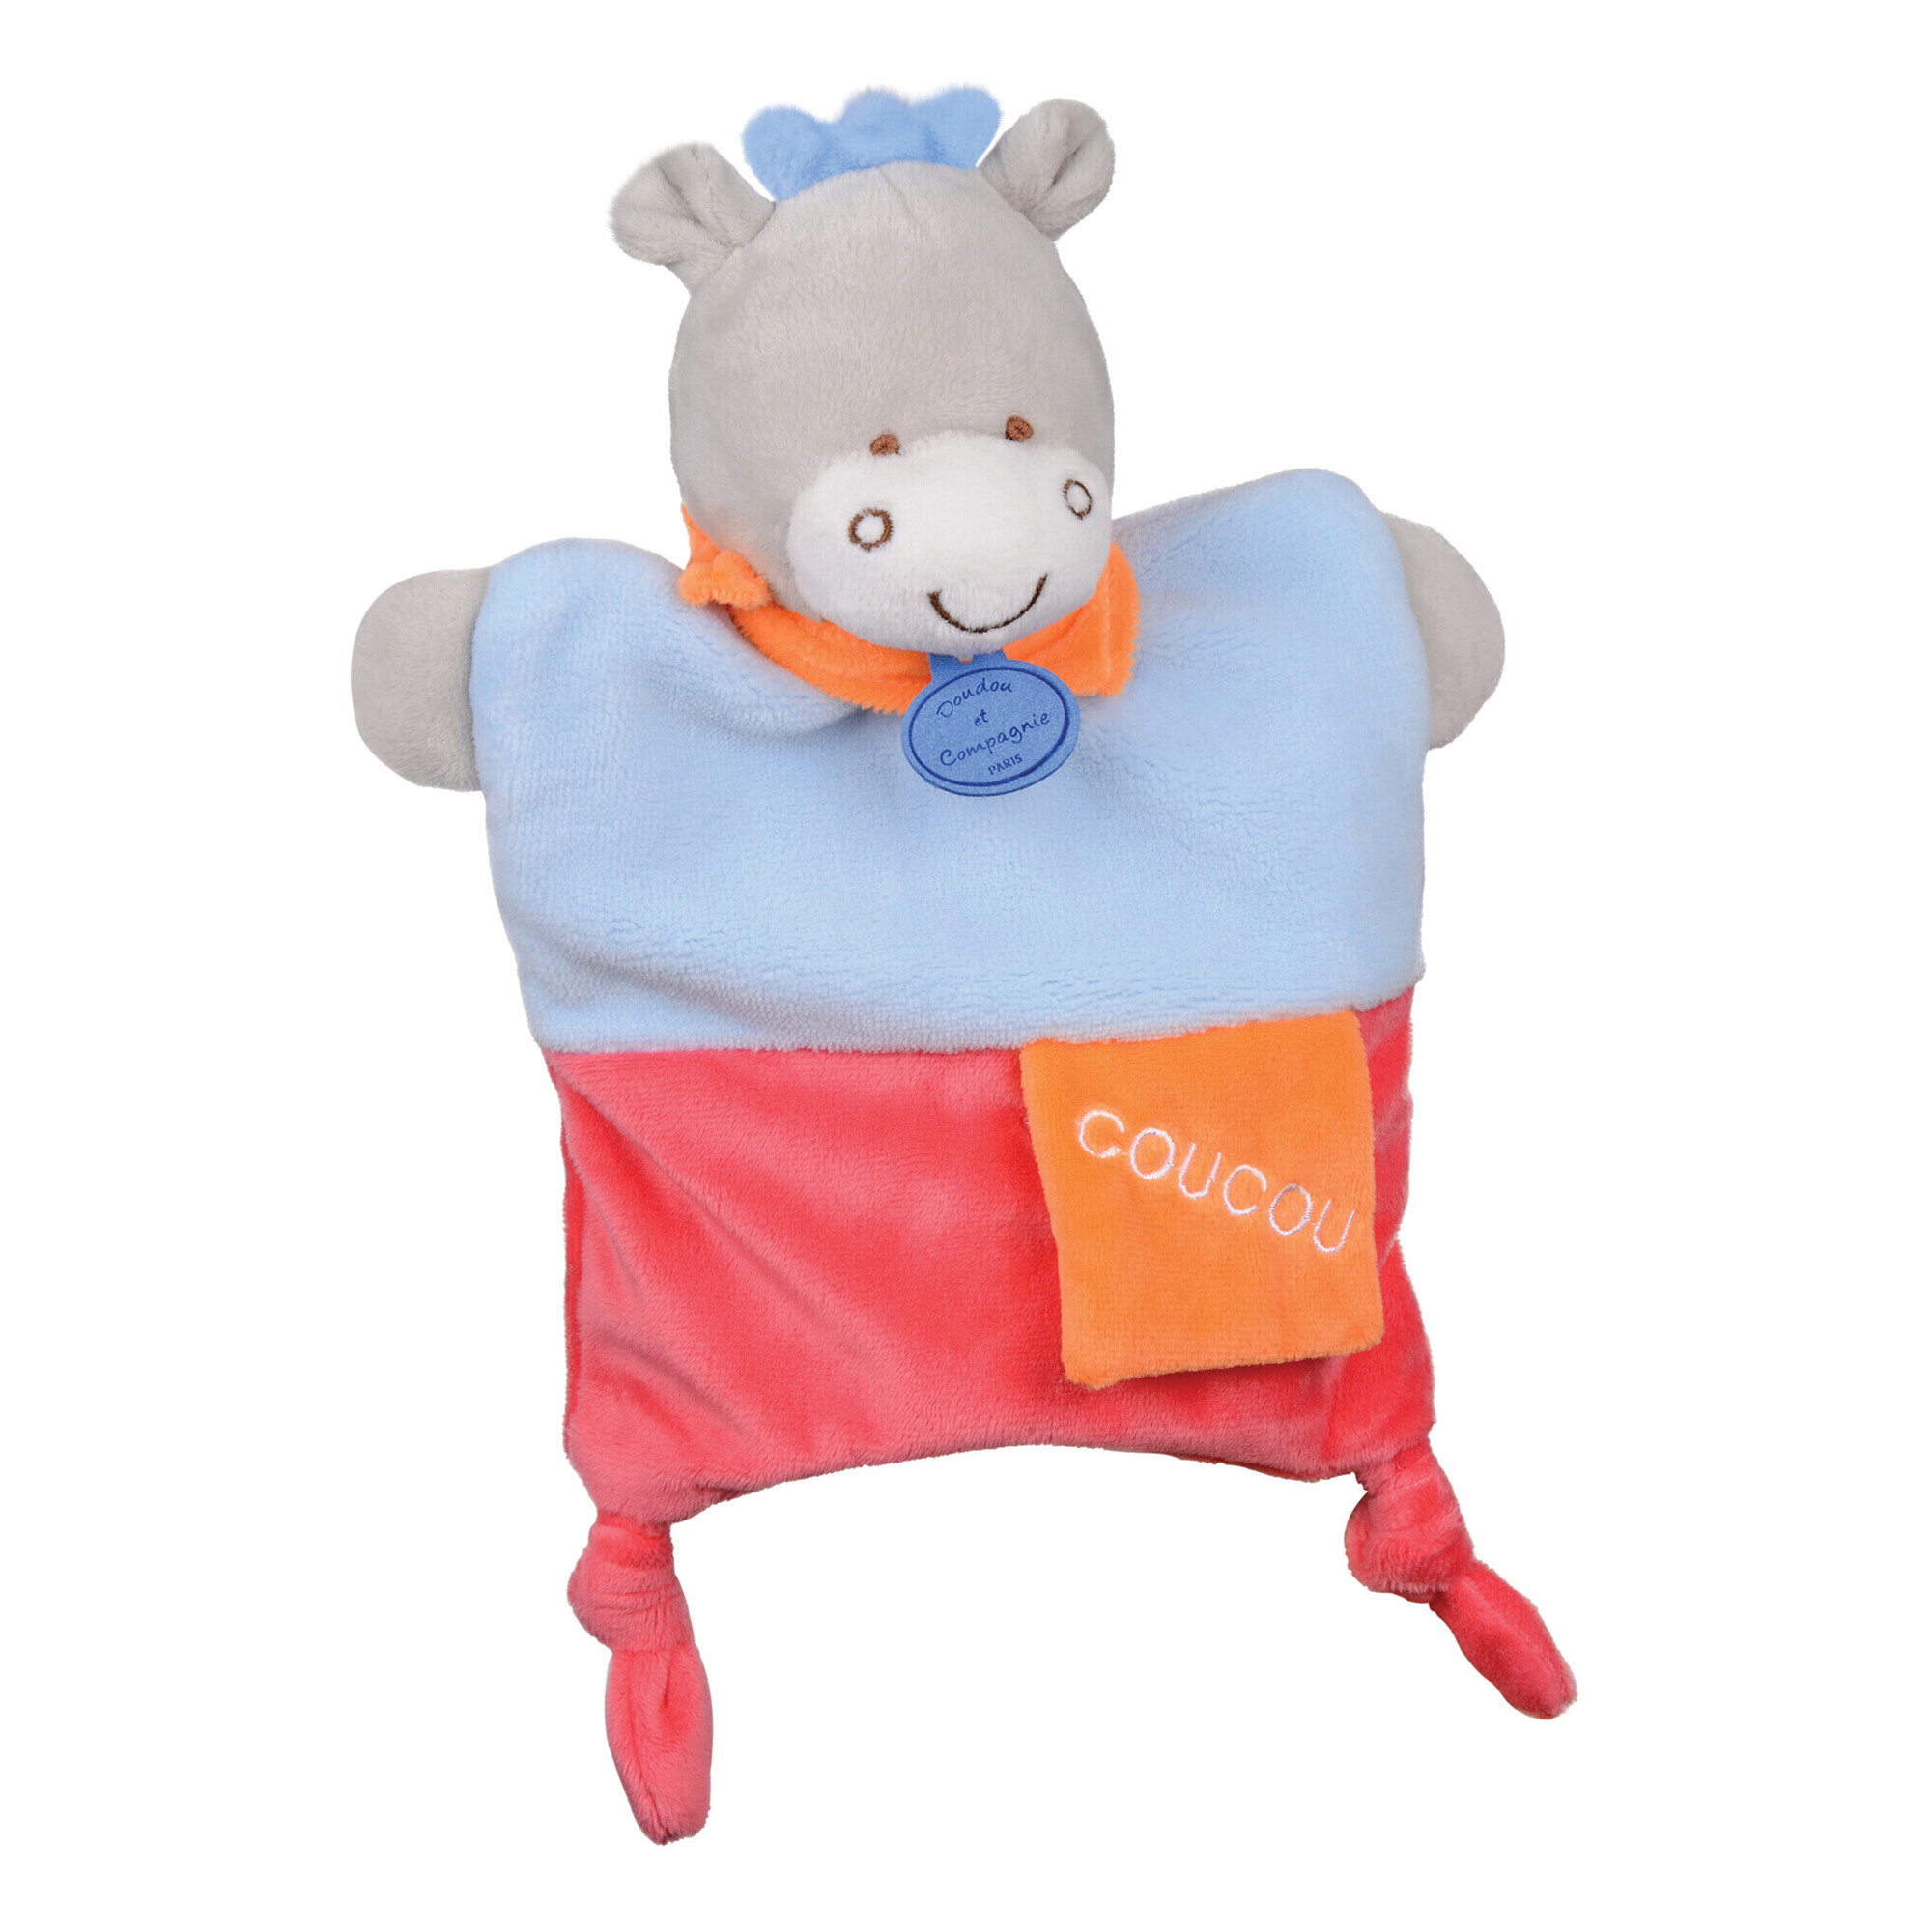 Doudou Panda marionnette - Petit sac - Amusette 3 EN 1-Doudou et